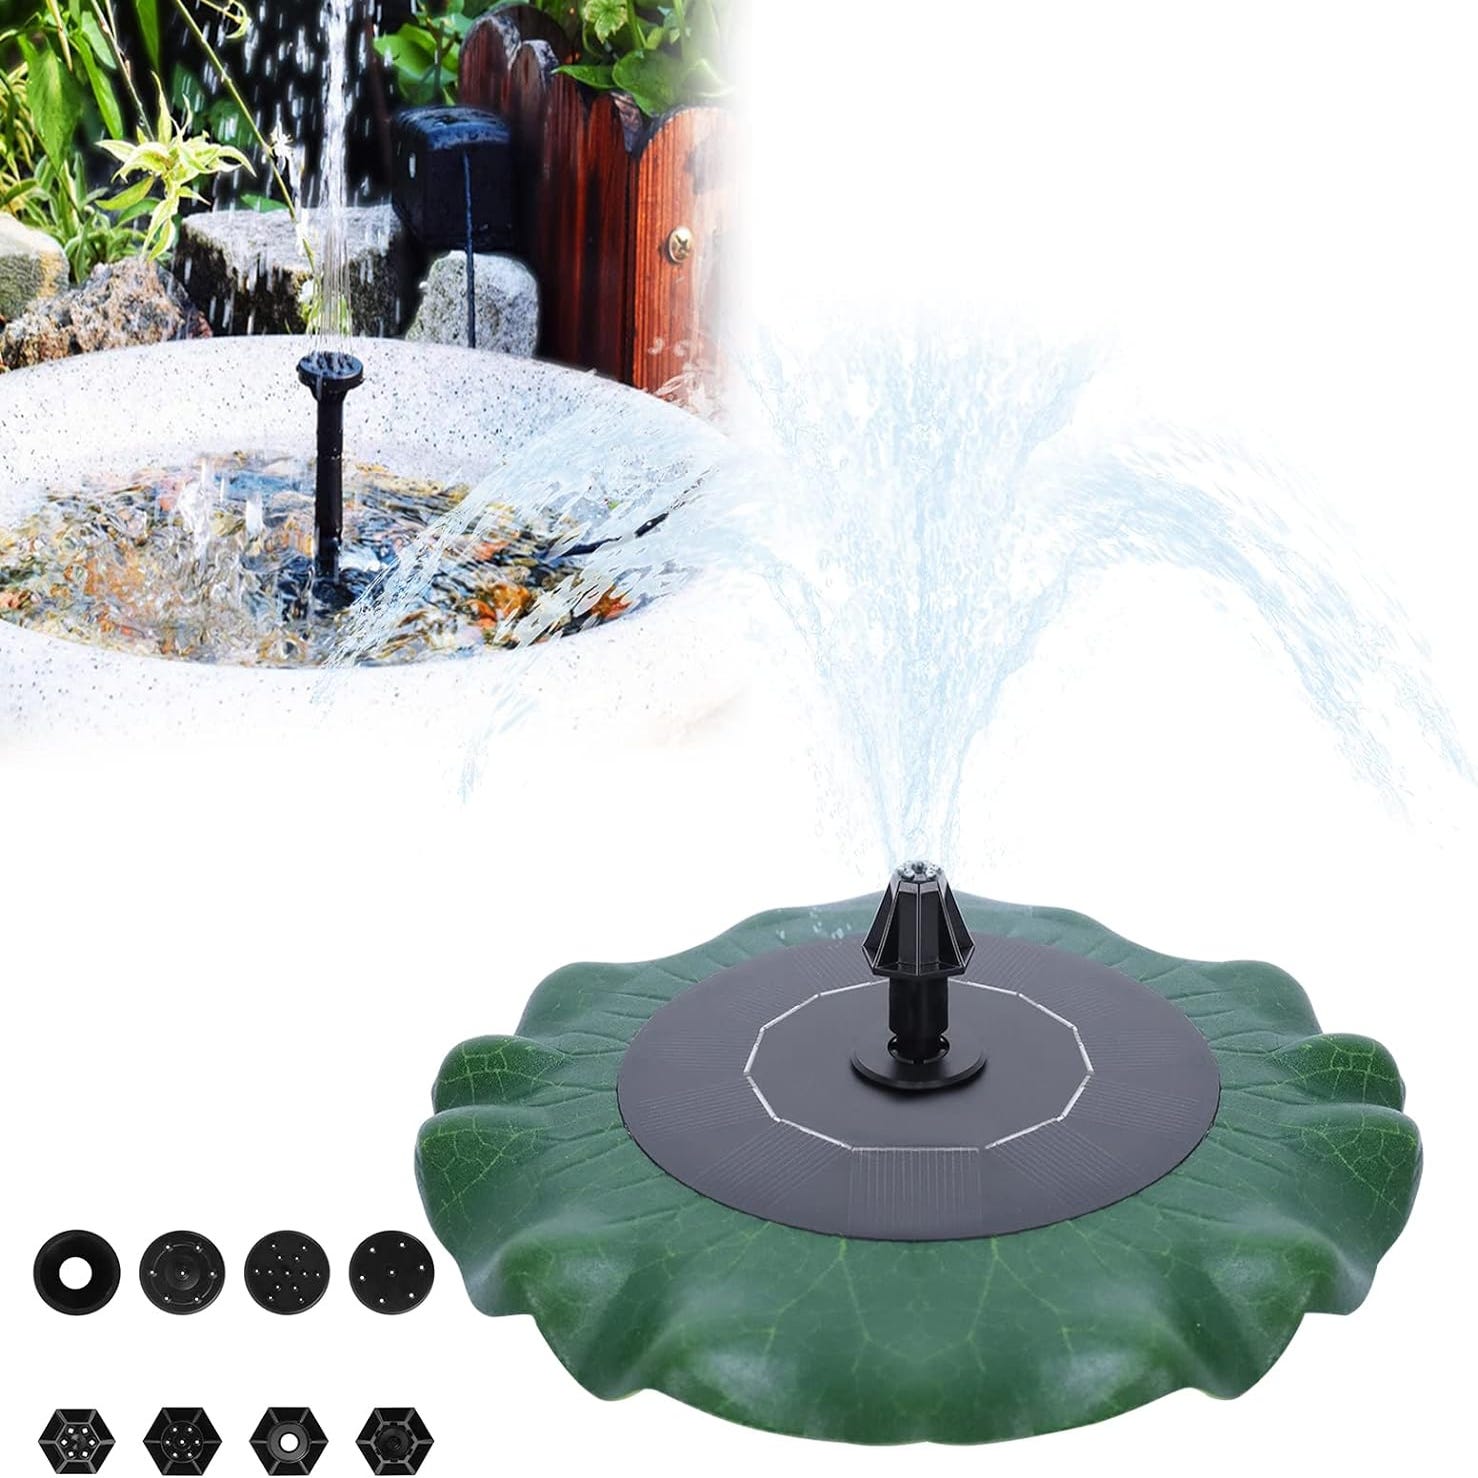 Fontaine étang accessoires fontaine solaire fontaine pompe à eau